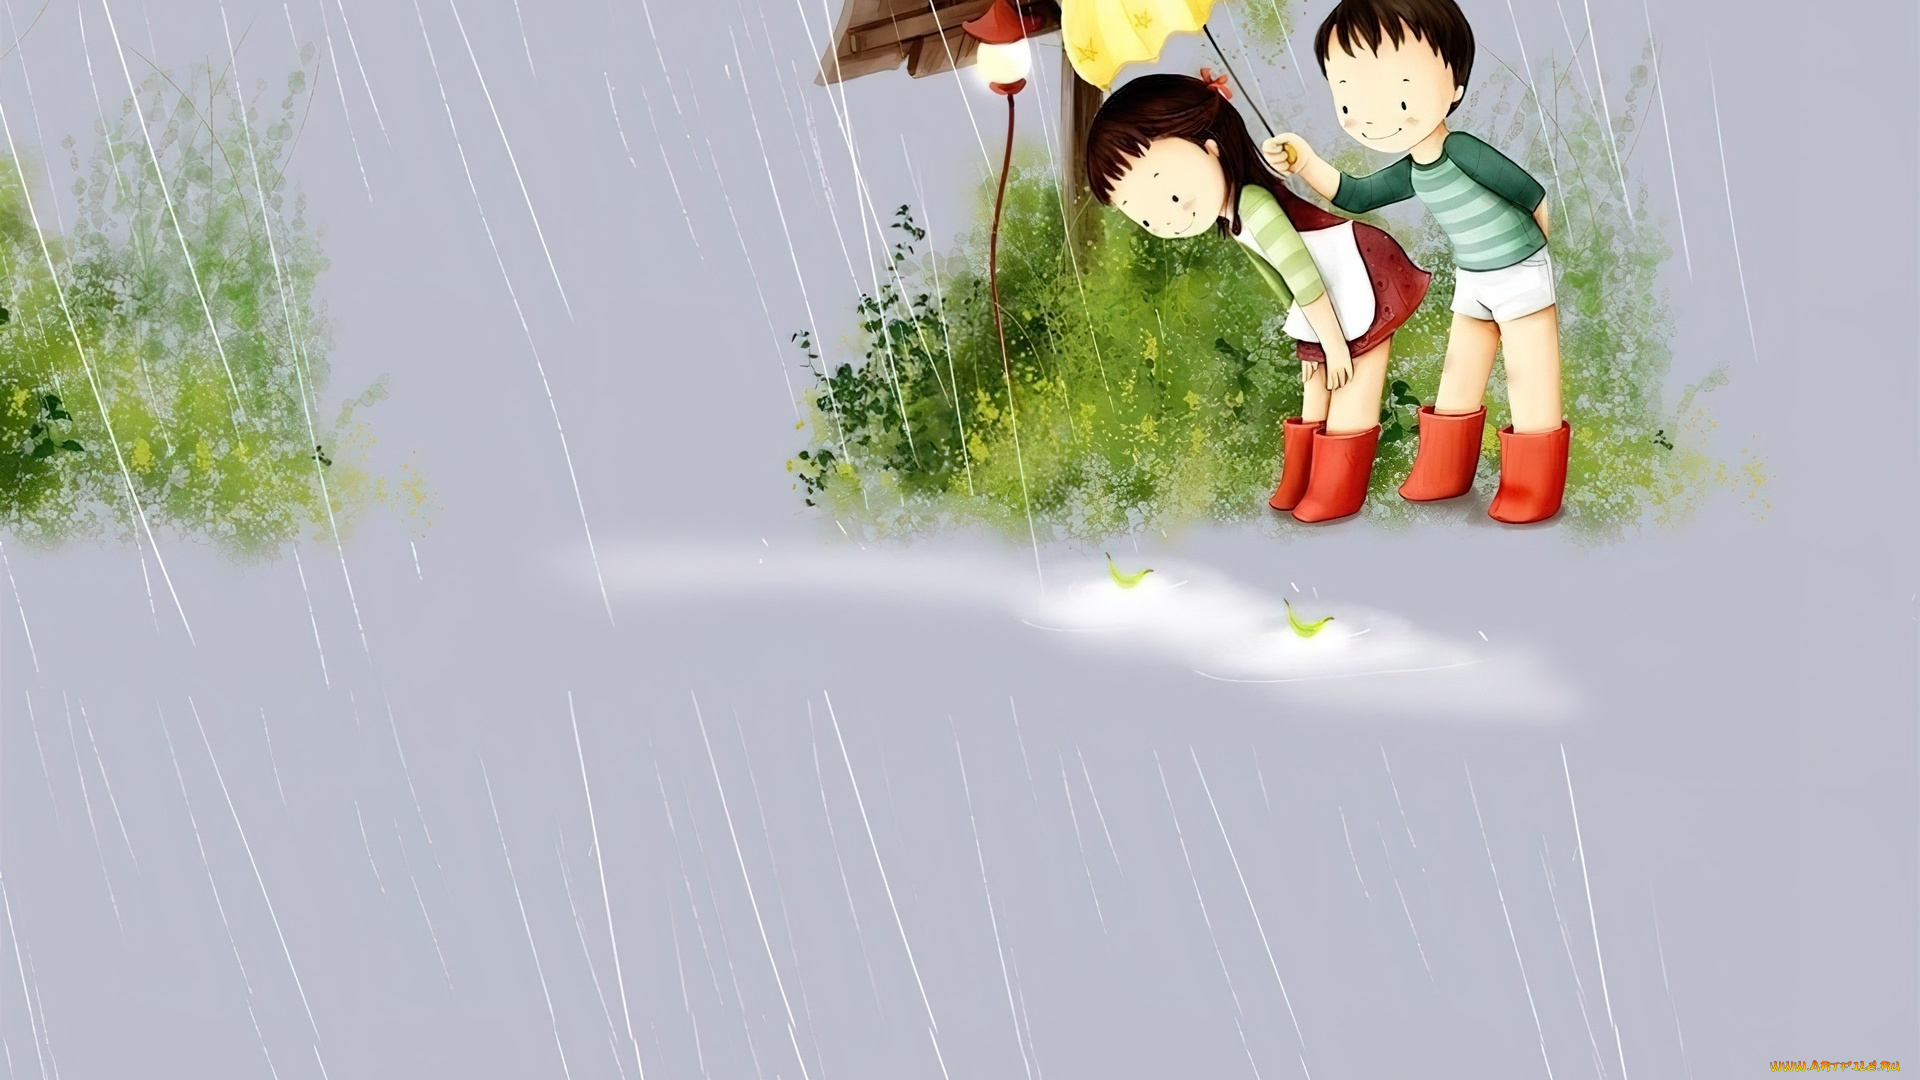 рисованное, дети, мальчик, девочка, зонт, дождь